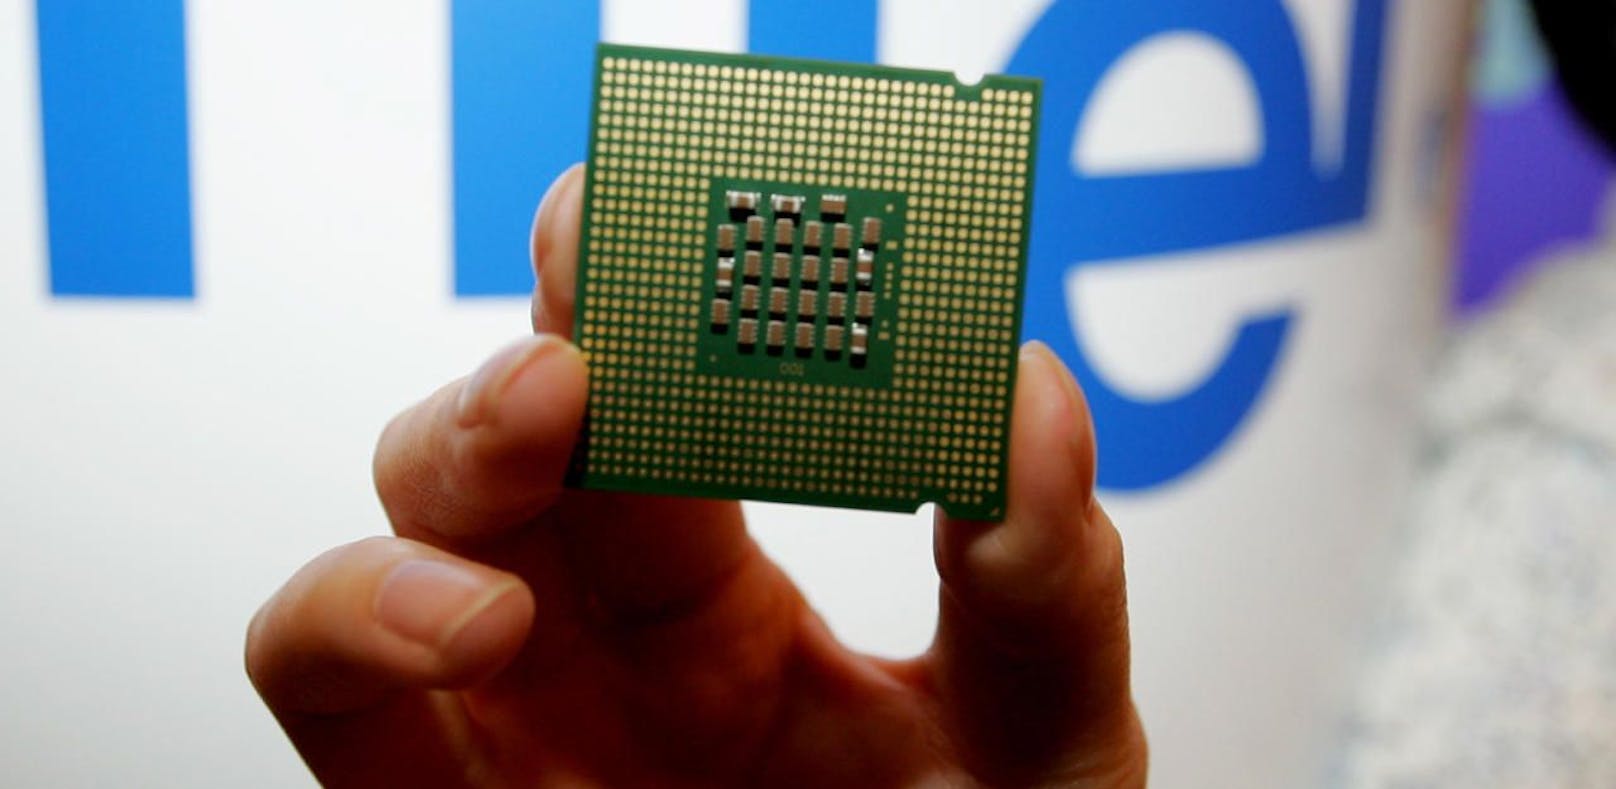 Betroffen sind vor allem Intel-Prozessoren, aber auch Hardware anderer führender Hersteller wie AMD und ARM.